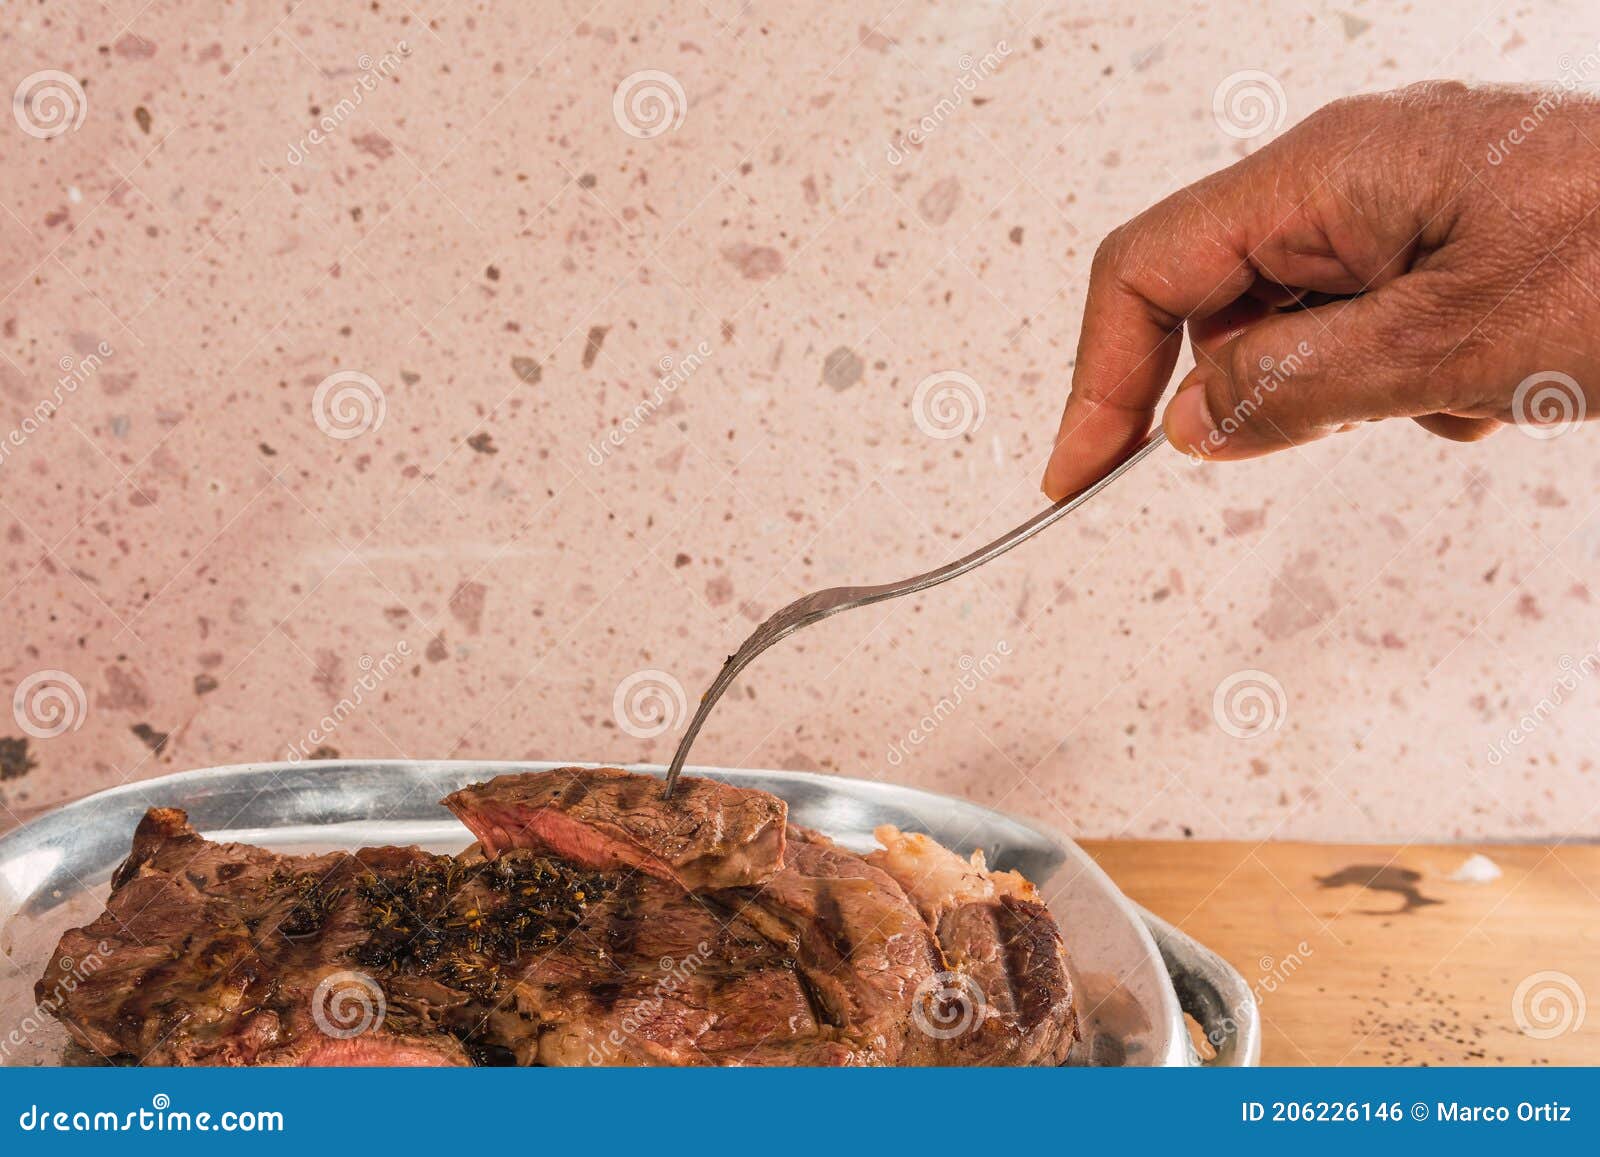 cut of meat `aguja norteÃÂ±a sonora`, served on a silver plate in the  of a cow 3